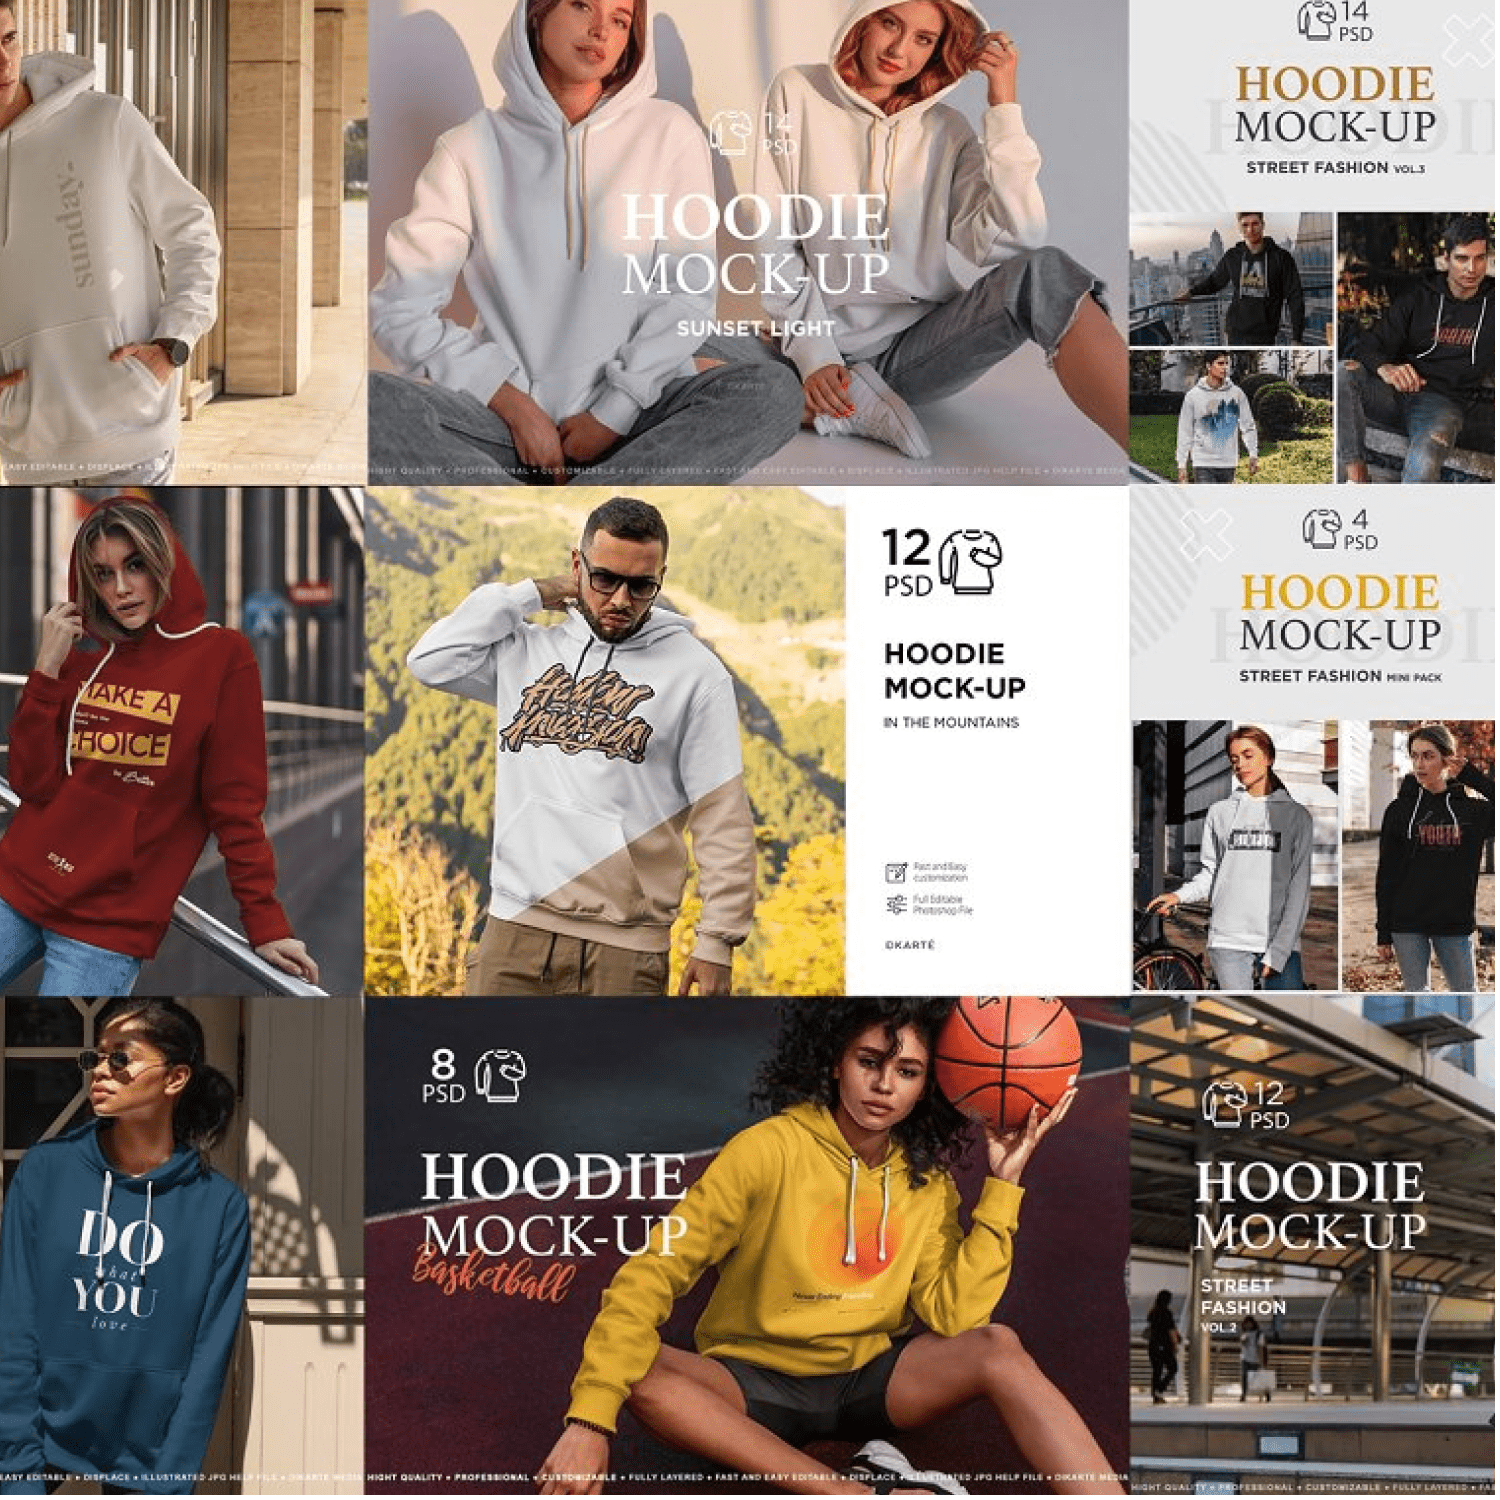 Hoodie Premium Bundle created by Dikarte Media.